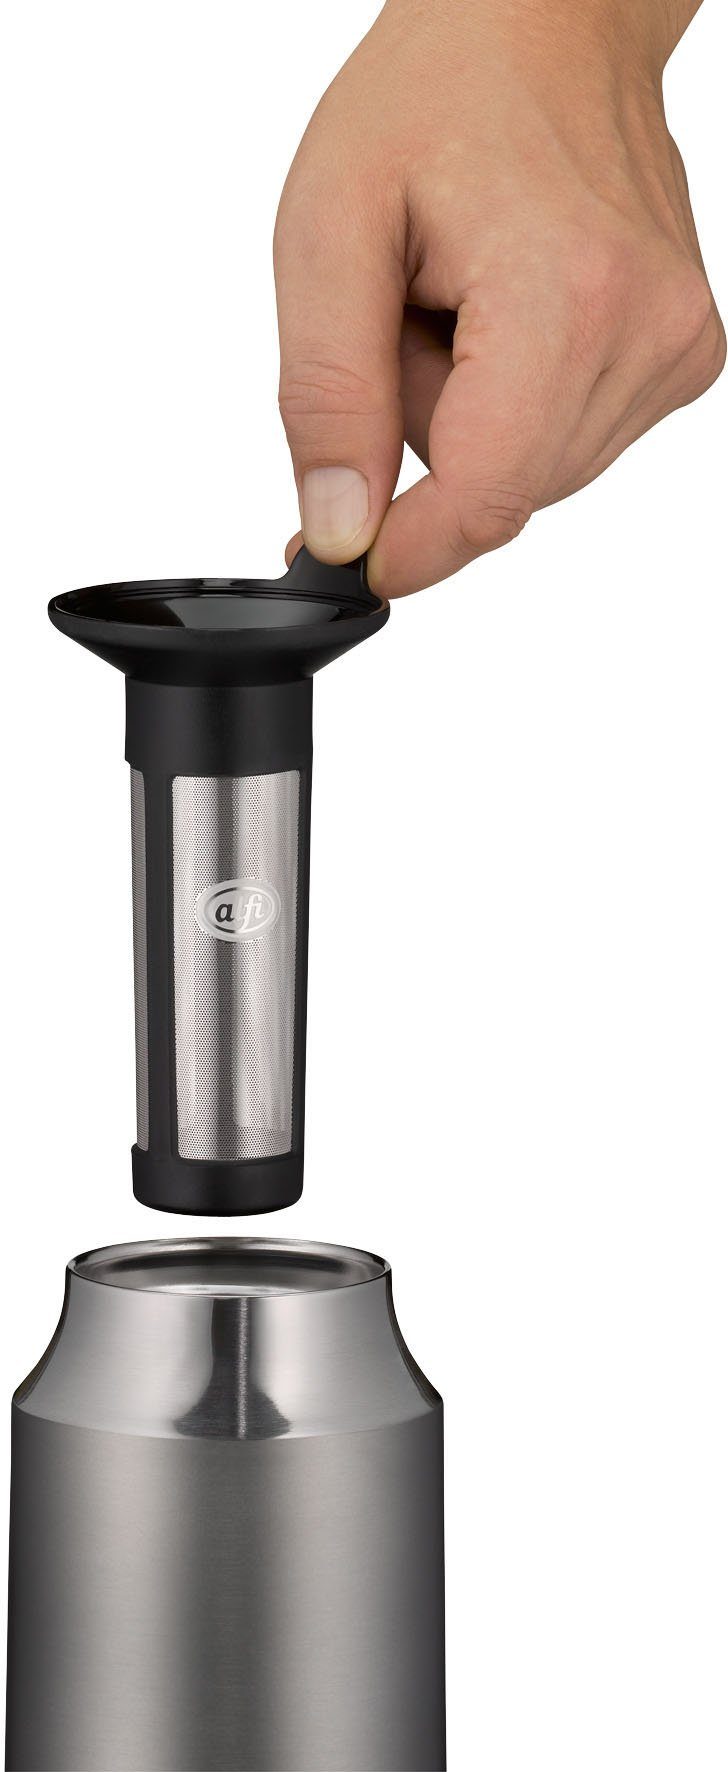 Alfi Thermoflasche Tea Bottle Cityline, grau ideal für Tee Edelstahl, Liter, 0,9